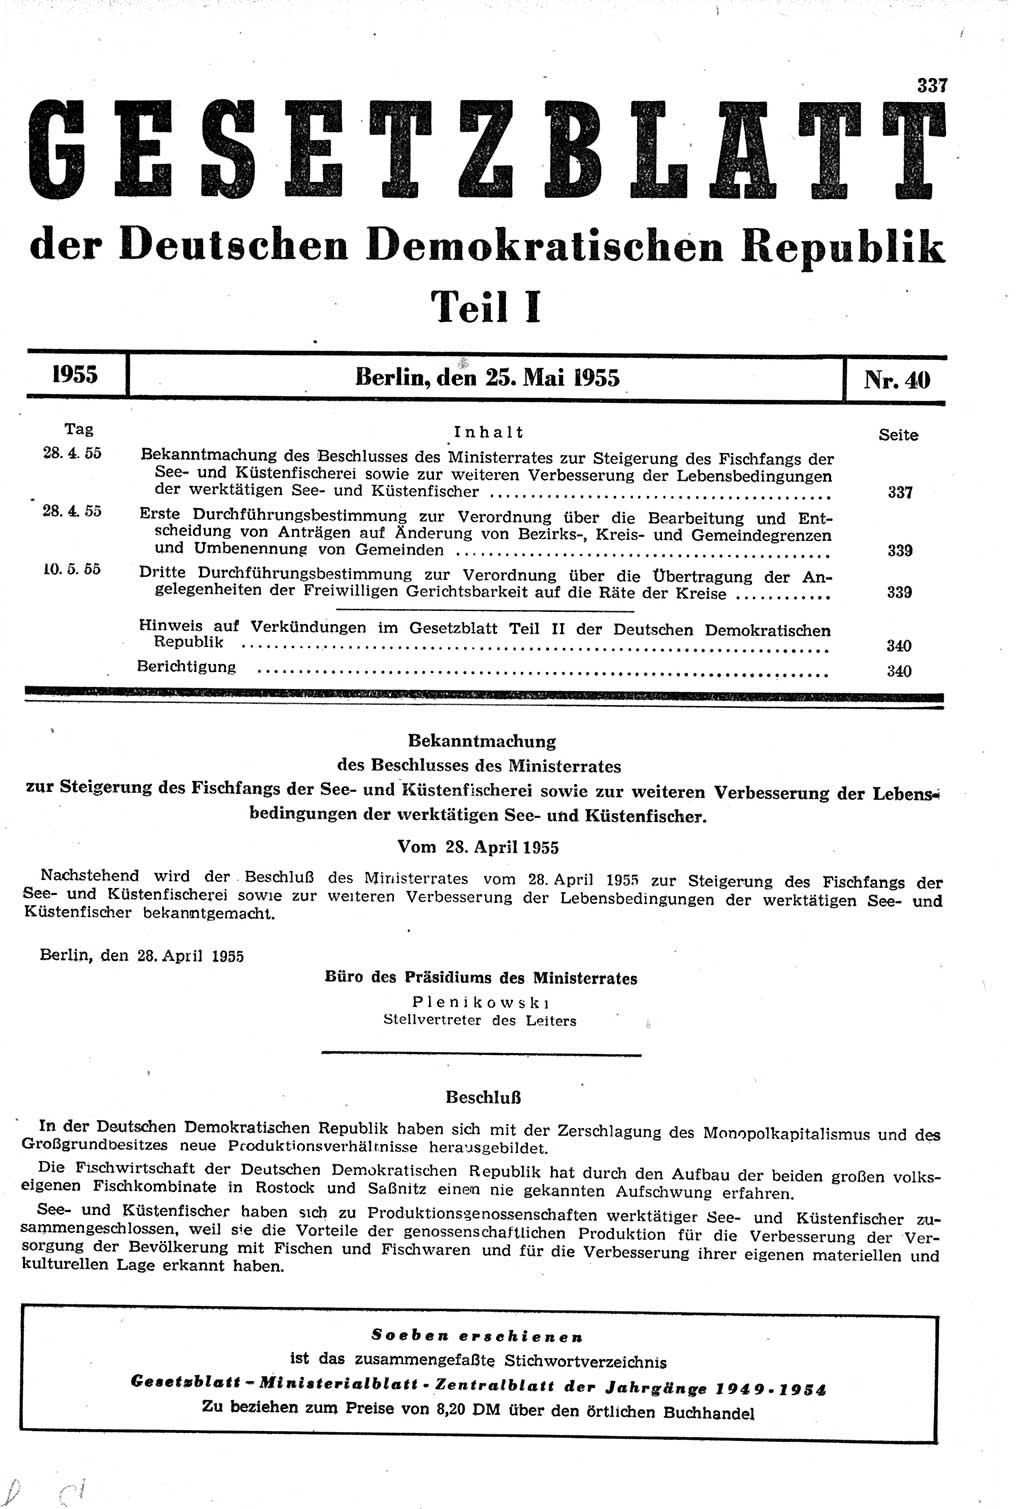 Gesetzblatt (GBl.) der Deutschen Demokratischen Republik (DDR) Teil Ⅰ 1955, Seite 337 (GBl. DDR Ⅰ 1955, S. 337)